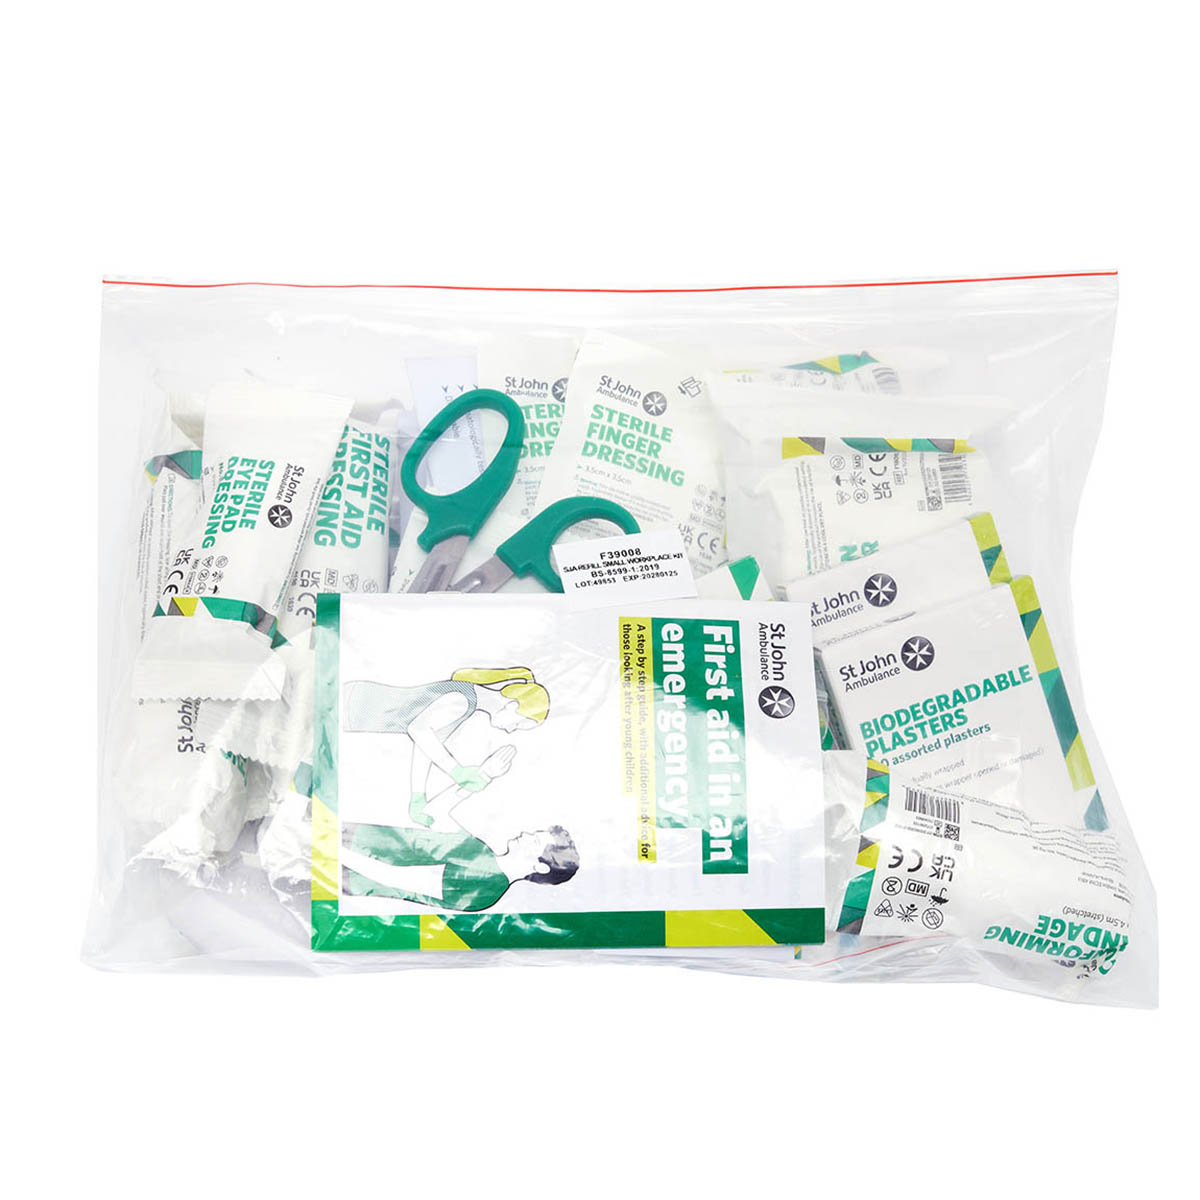 St John Ambulance Workplace Refill First Aid Kit BS 8599-1:2019